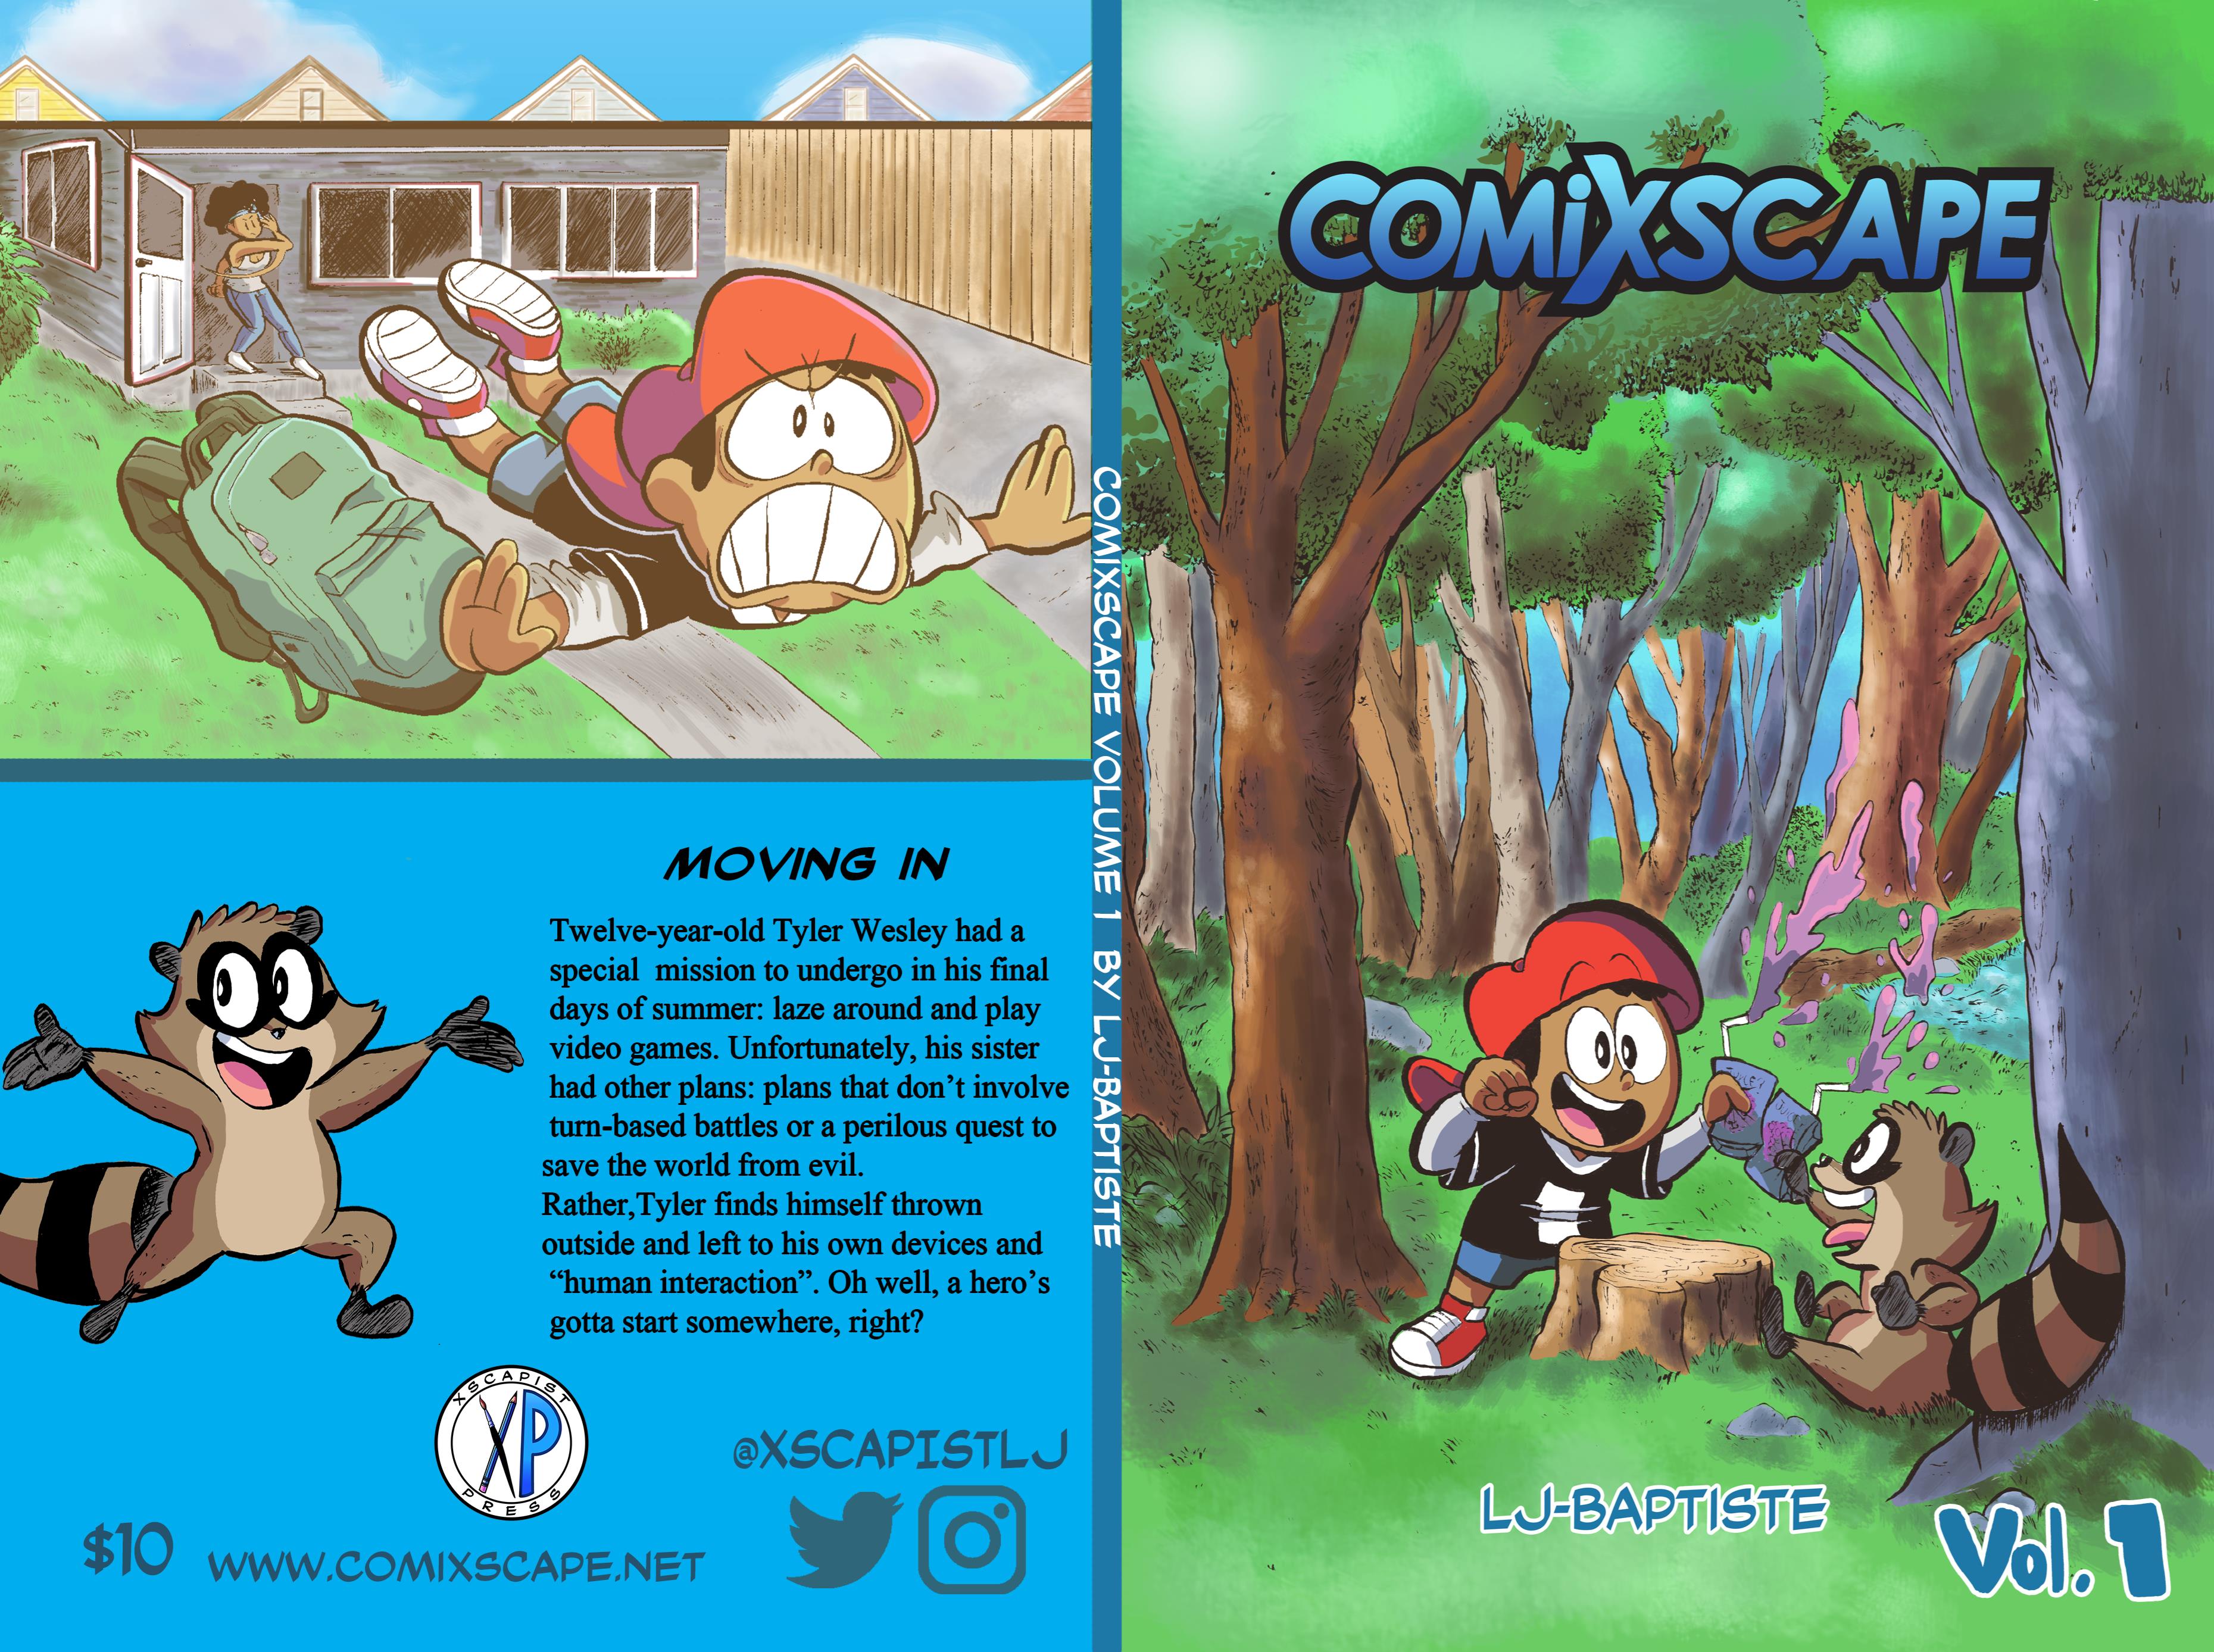 COMIXSCAPE Vol 1 (2021 ed.) cover image